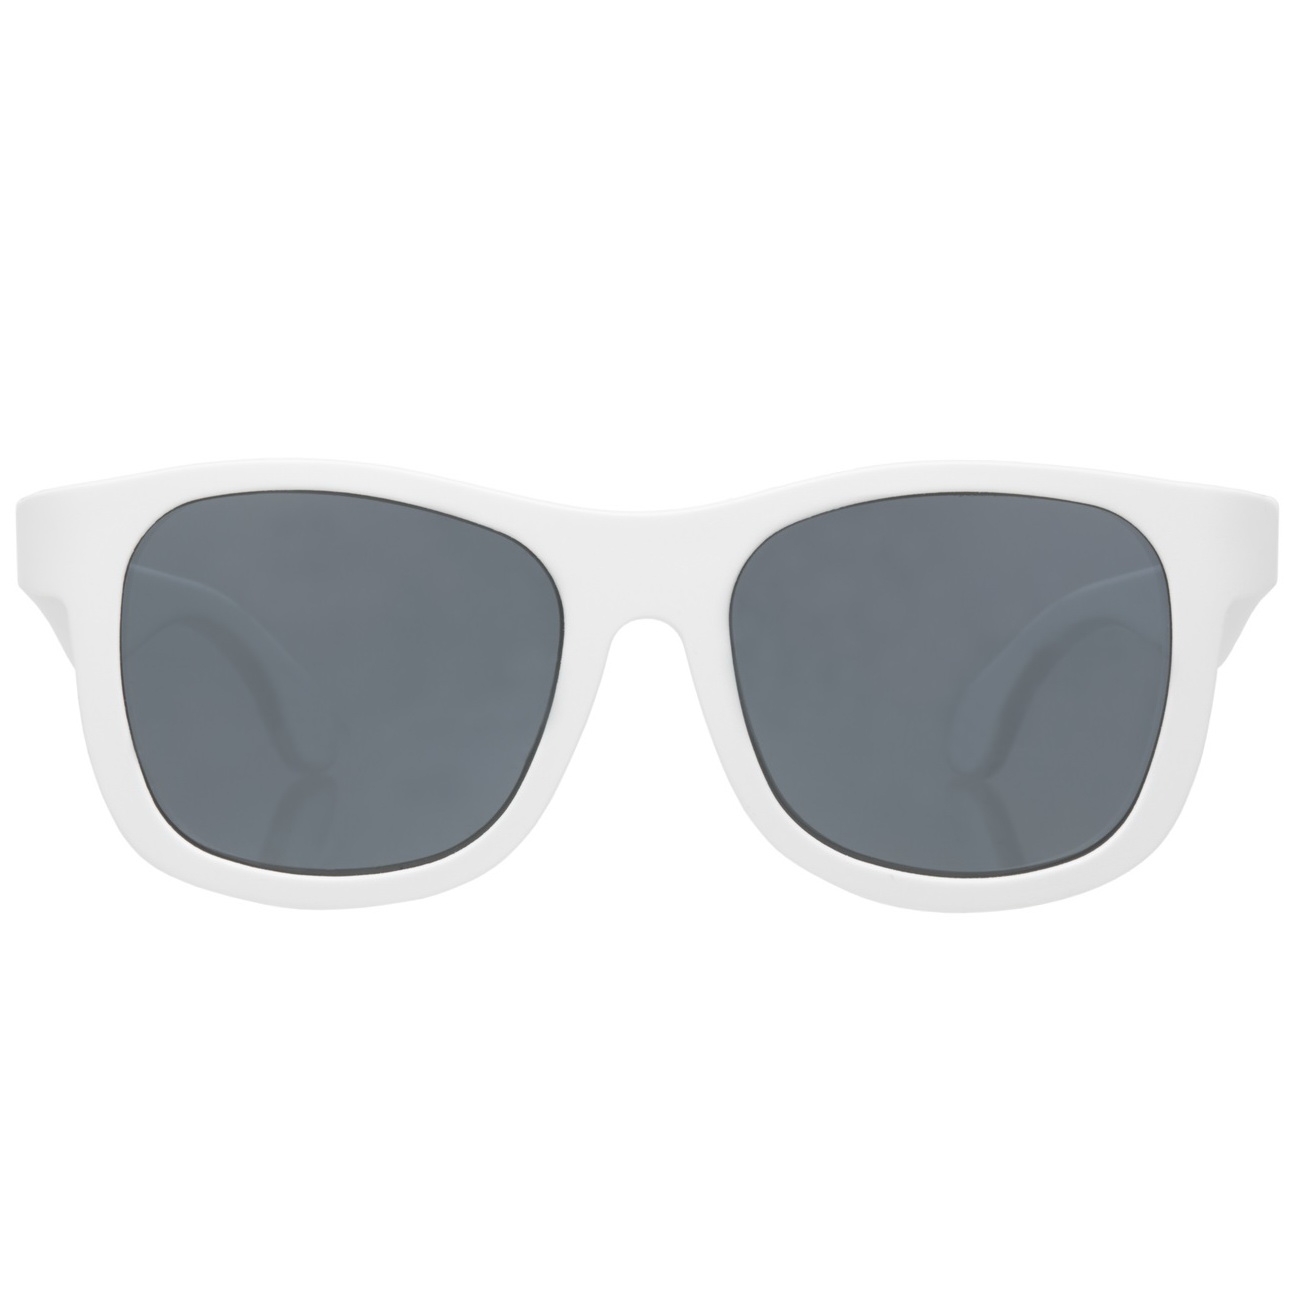 Солнцезащитные очки - Babiators Limited Edition Navigator. Шаловливый белый / Wicked White. Junior  